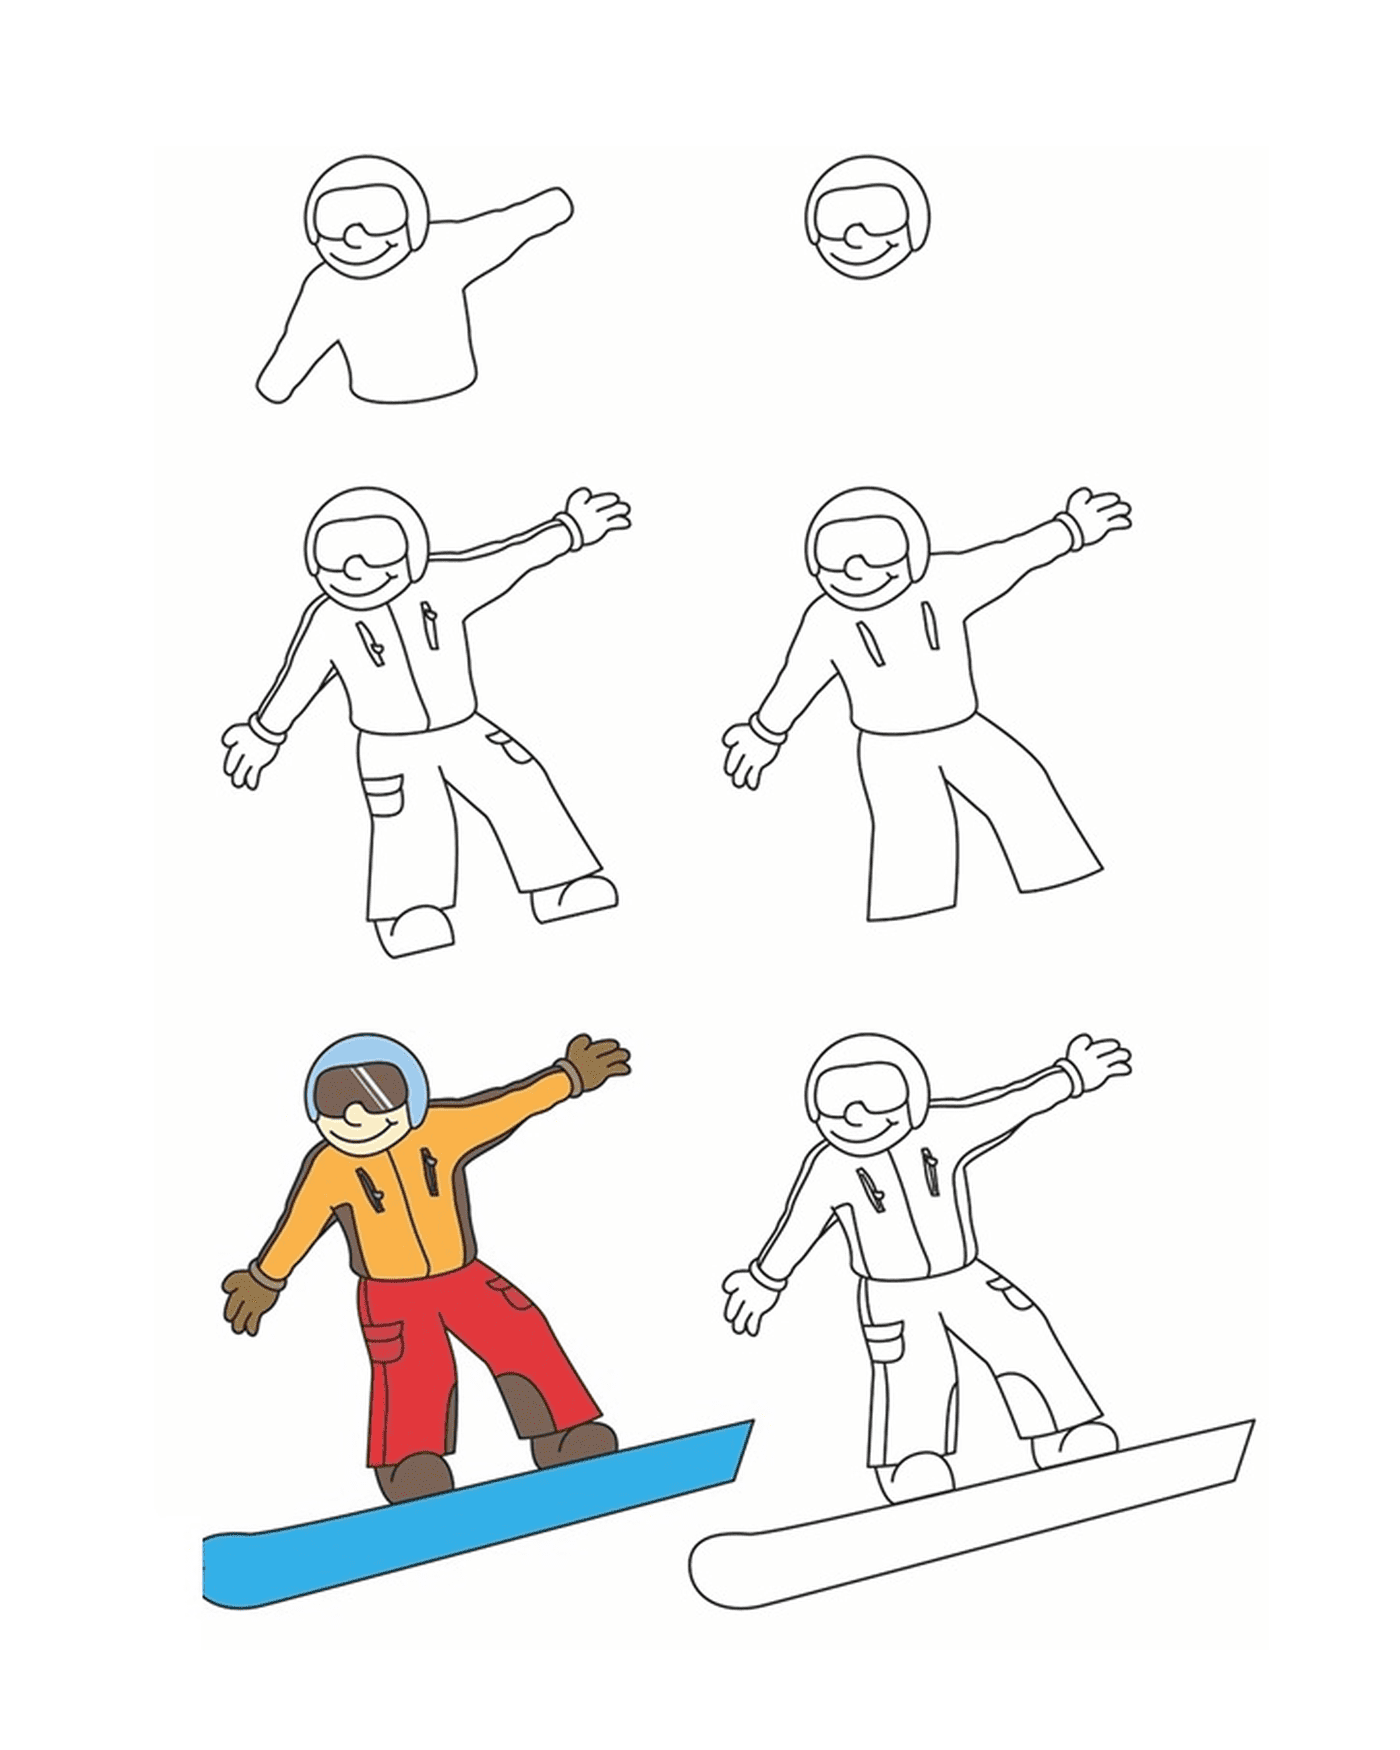  Cómo dibujar snowboarding 